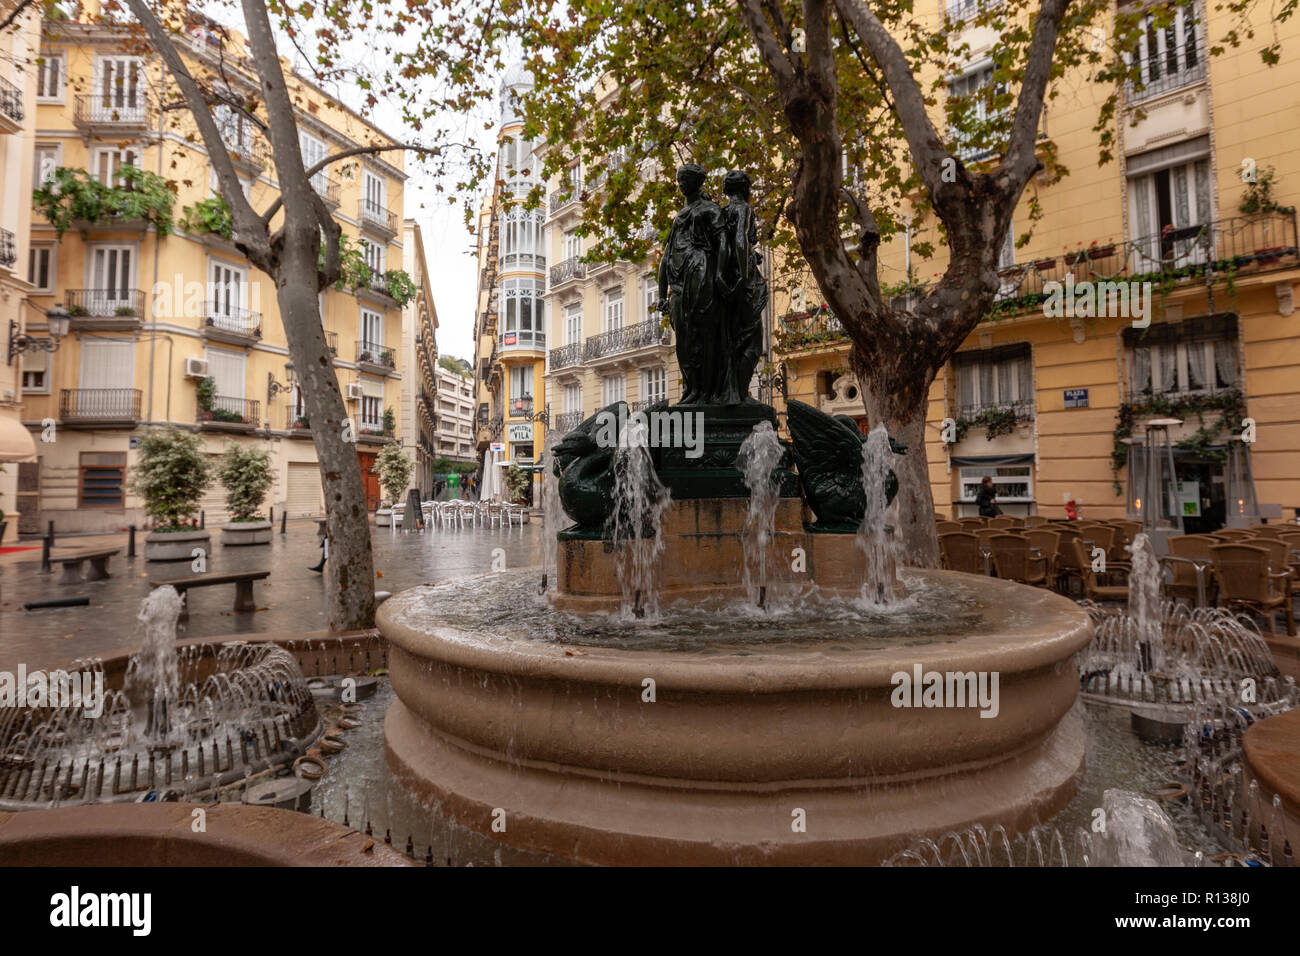 Fuente de las tres ninfas o de los patos in Rodrigo Botet plaza, Valencia, Spain Stock Photo